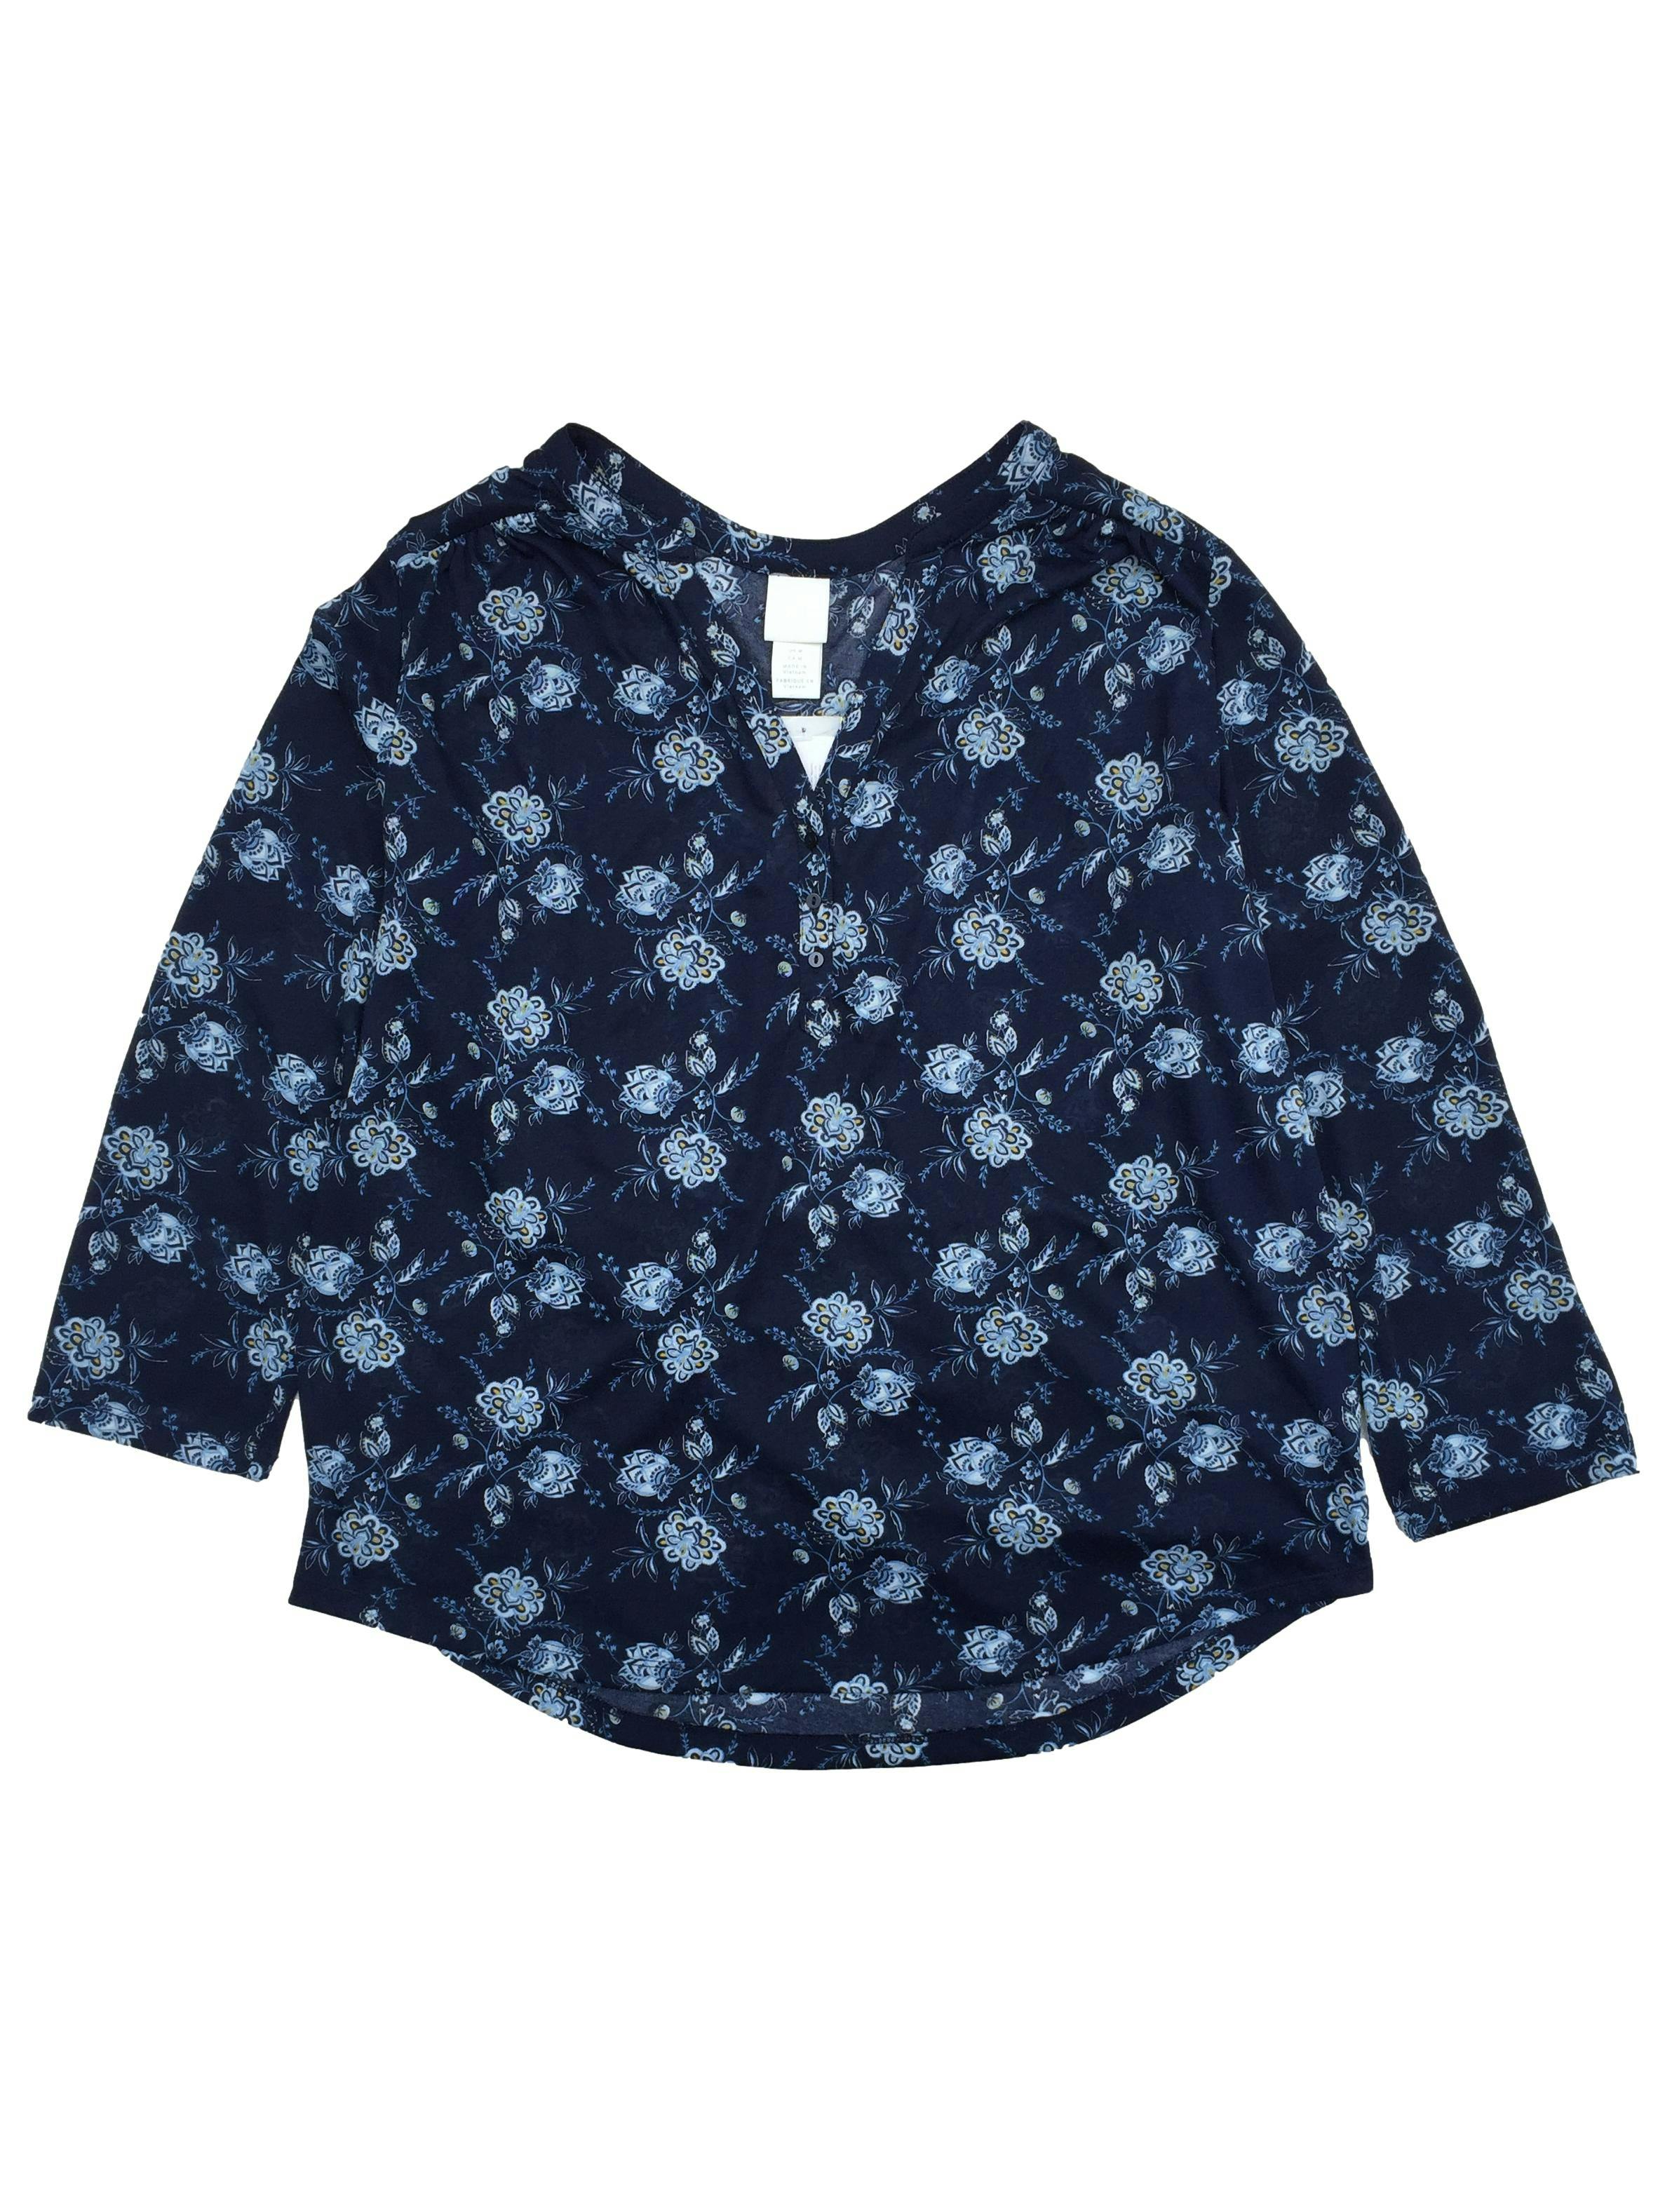 Polo H&M azul con flores, cuello en V con botones y pliegue en espalda, manga 3/4. Busto 108cm Largo  65cm